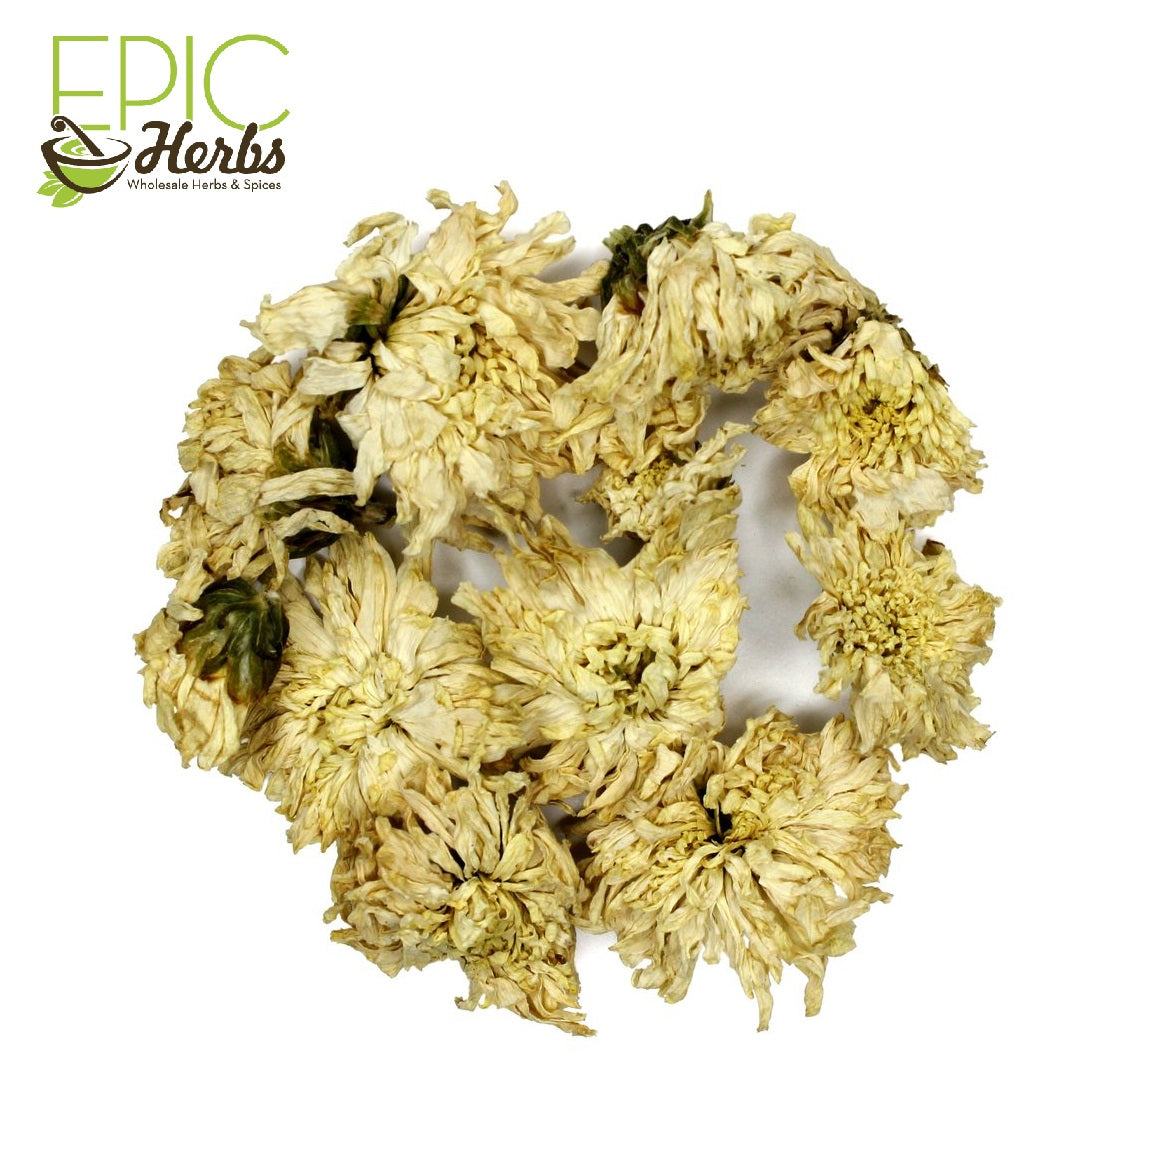 Chrysanthemum Flowers Whole - 1 lb